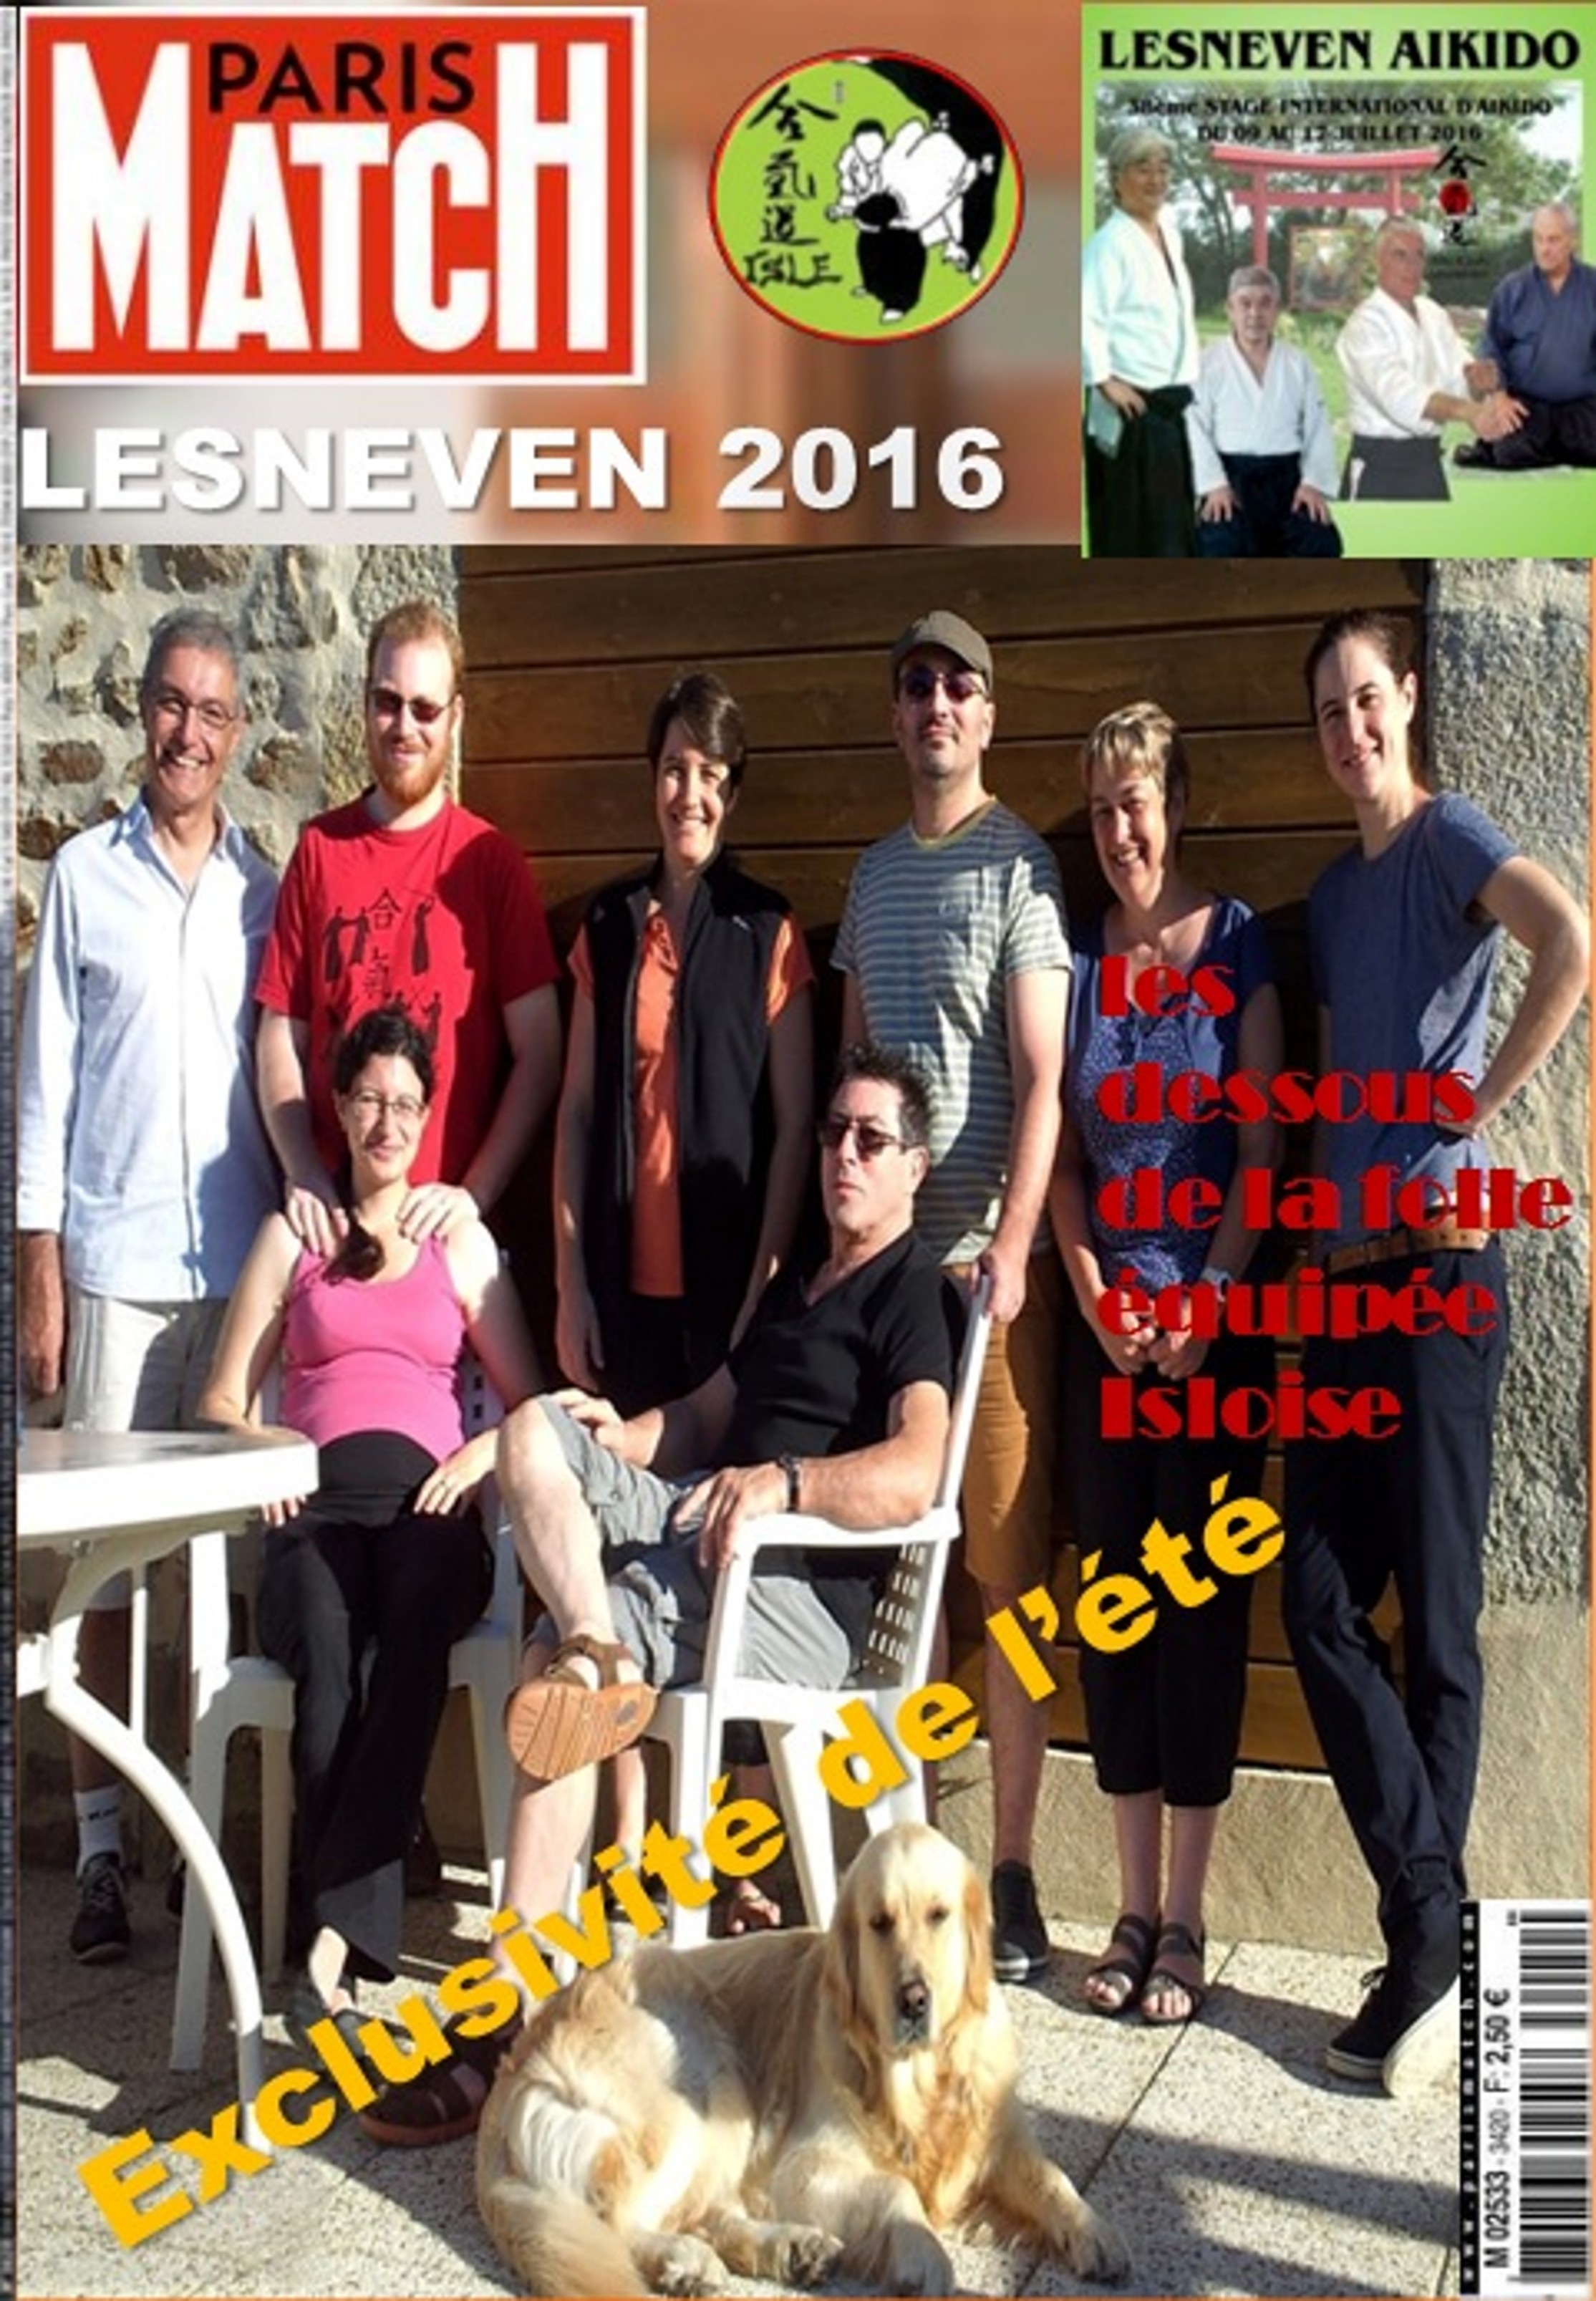 160709 Lesneven 2016 Couverture Paris Match.jpg - 995,06 kB